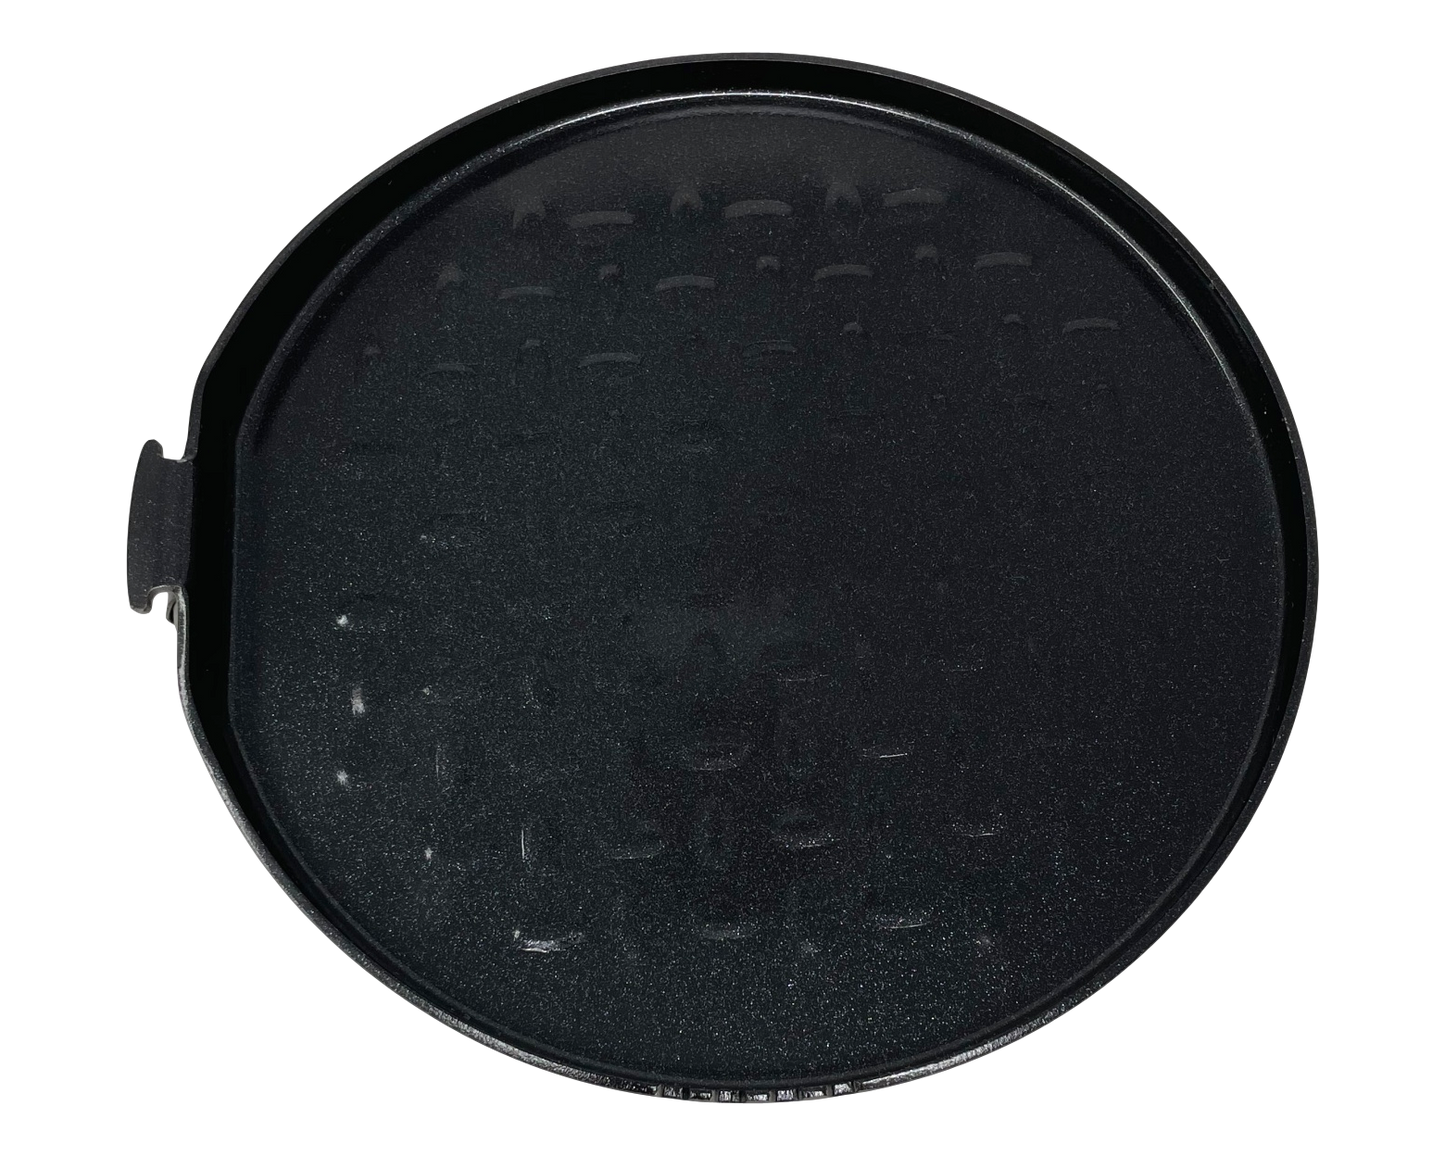 Valtcan Titanium Grill Pan Non Stick Ceramic Coated 185mm 7.3 inch Diameter 420g